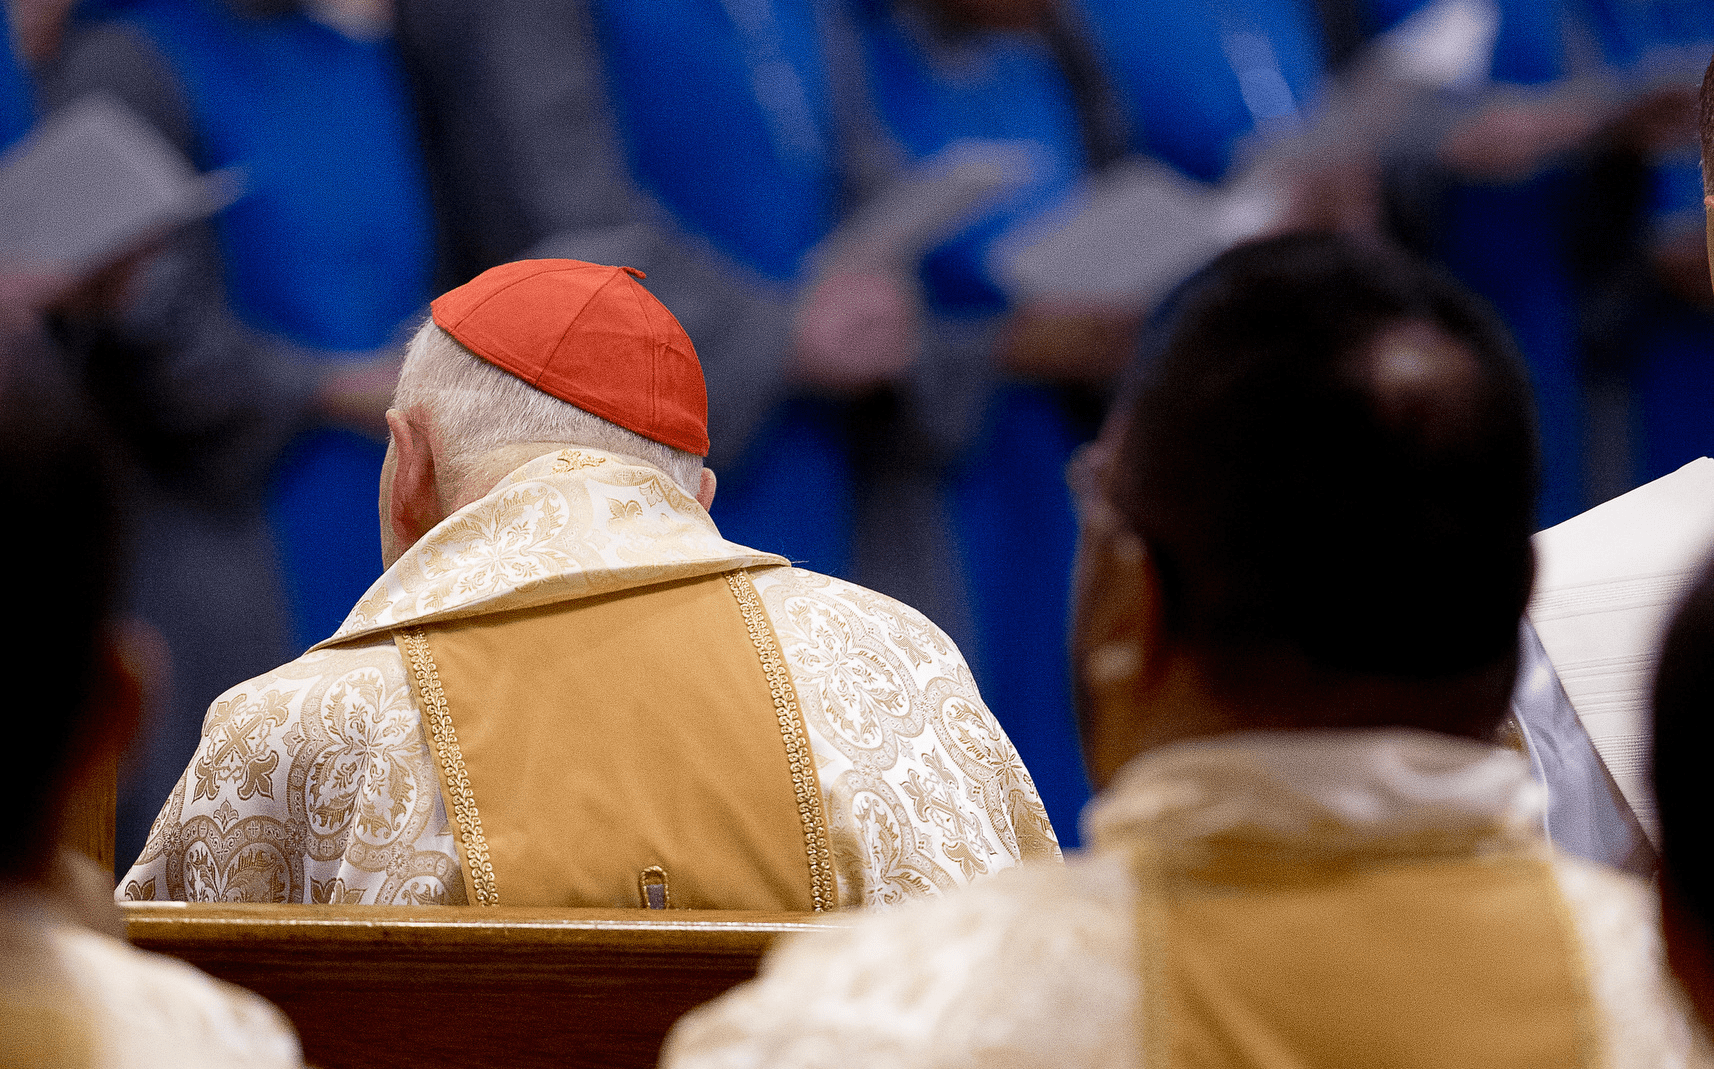 Cardinal Sin: Another Dismal Failure